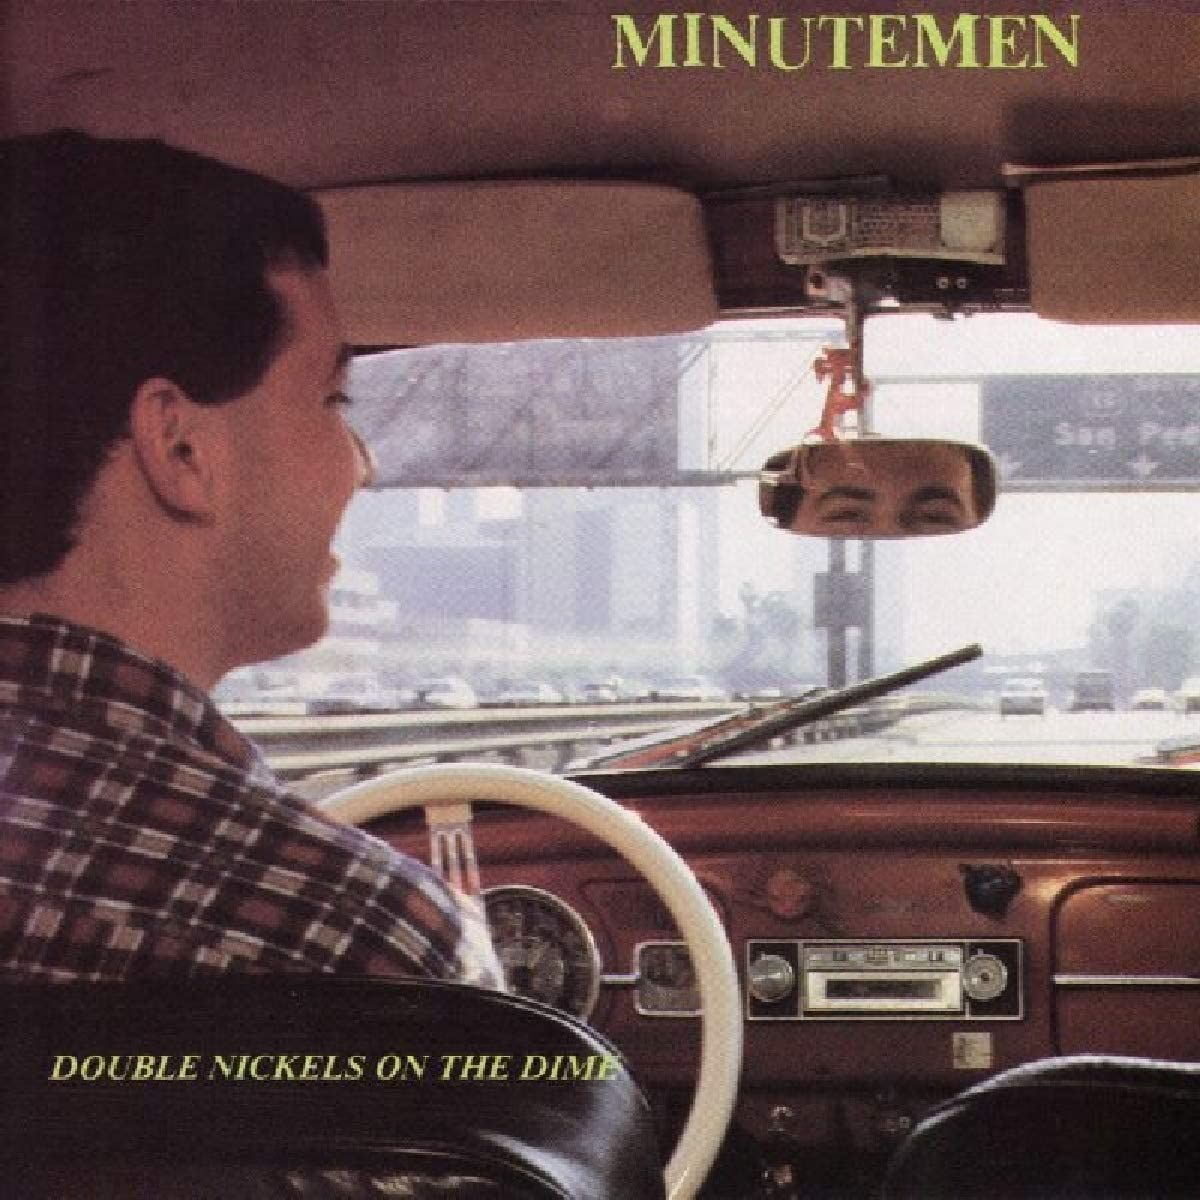 #DeSnelsteWeek - Minutemen - Viet Nam (1'27")